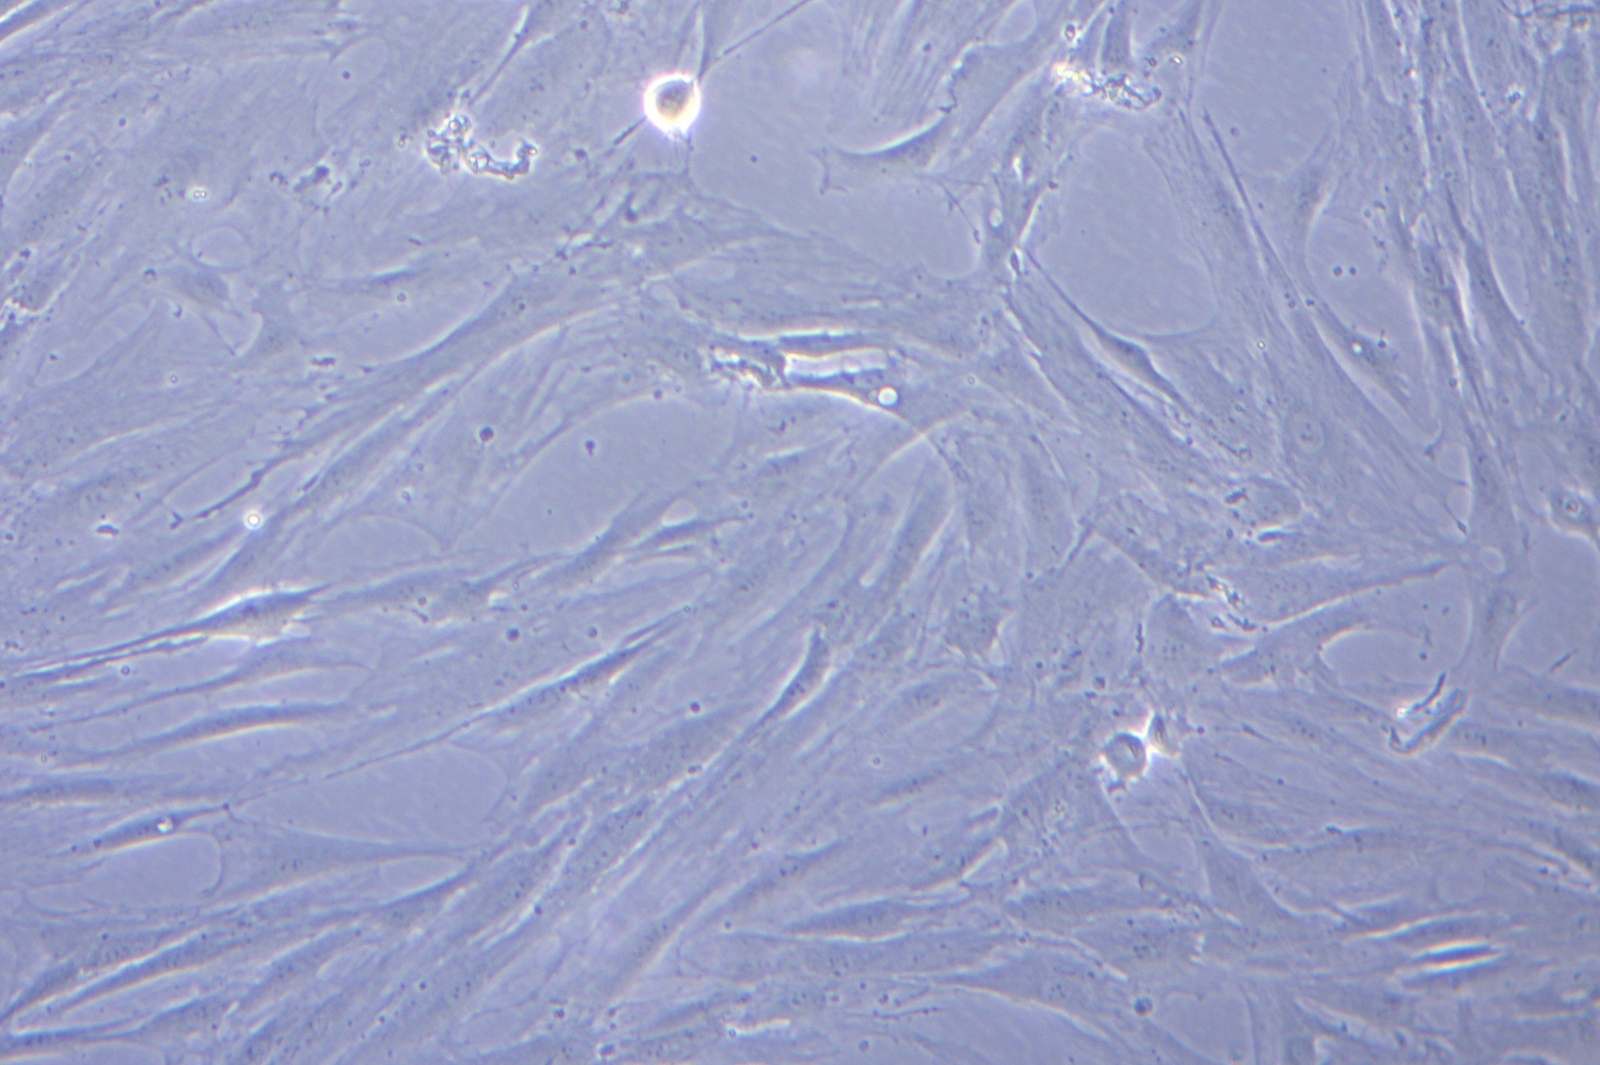 P02_cultivos_celular